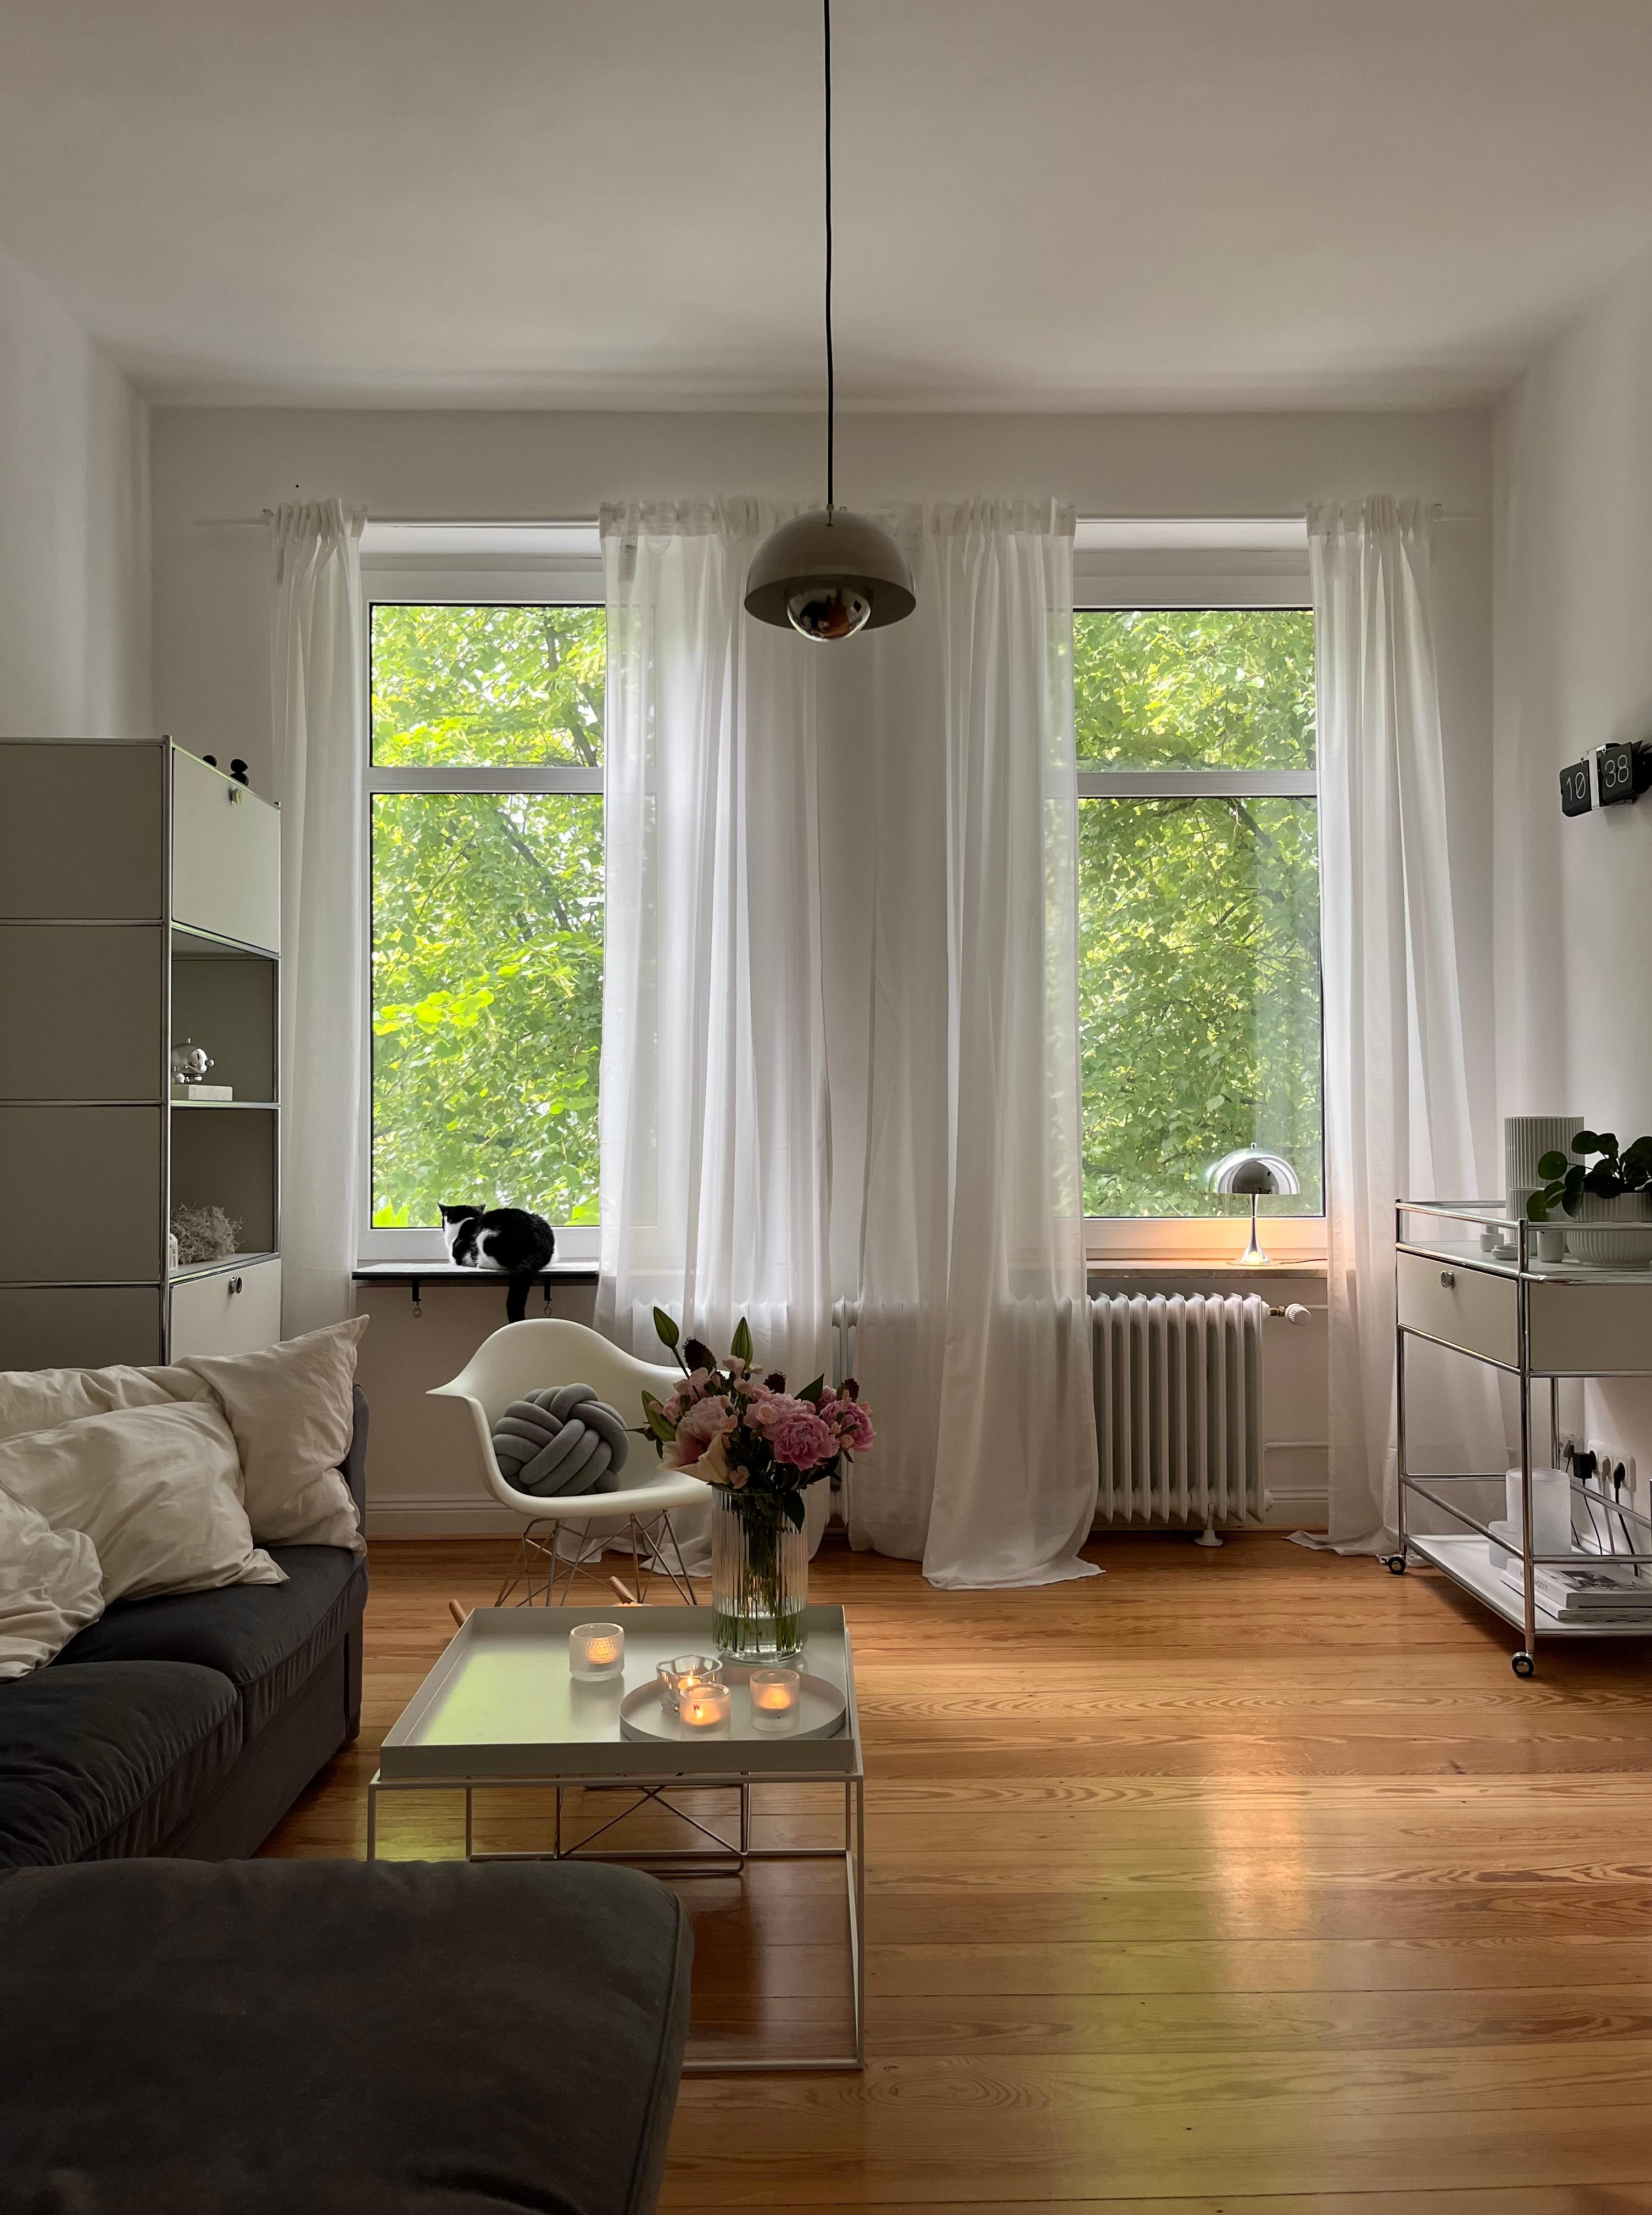 #wohnzimmer #pfingstrosen #frischeblumen #altbauwohnung #skandinavischwohnen 